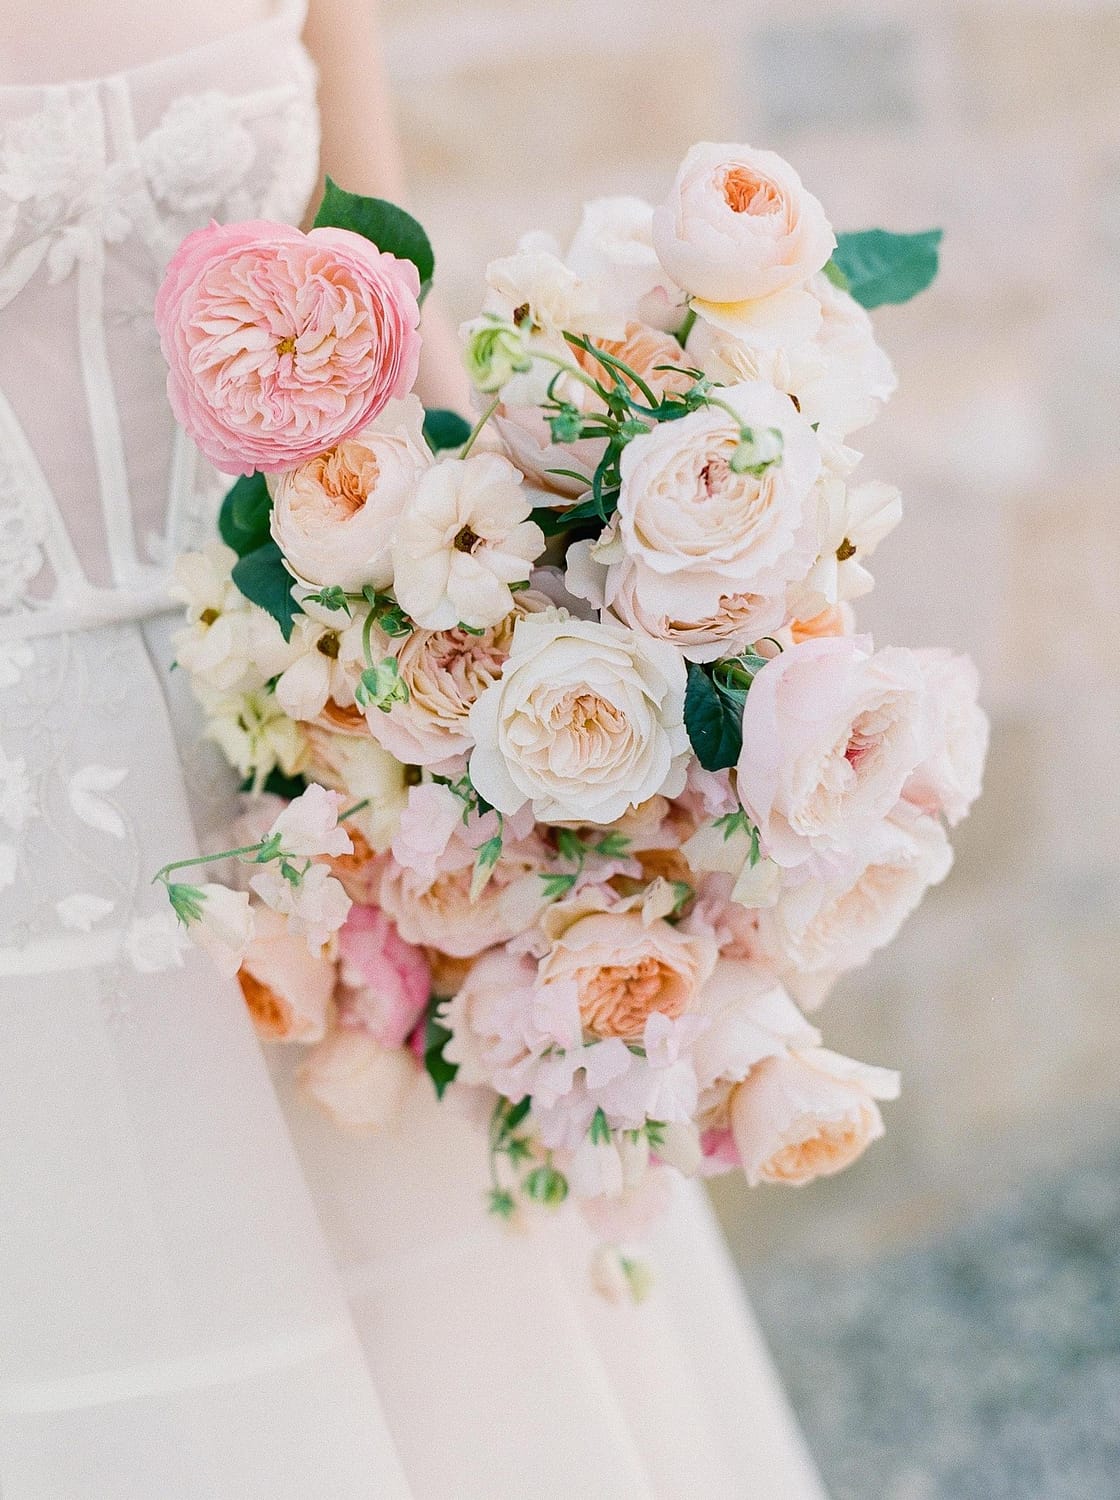 زهور الزفاف البيضاء الوردية